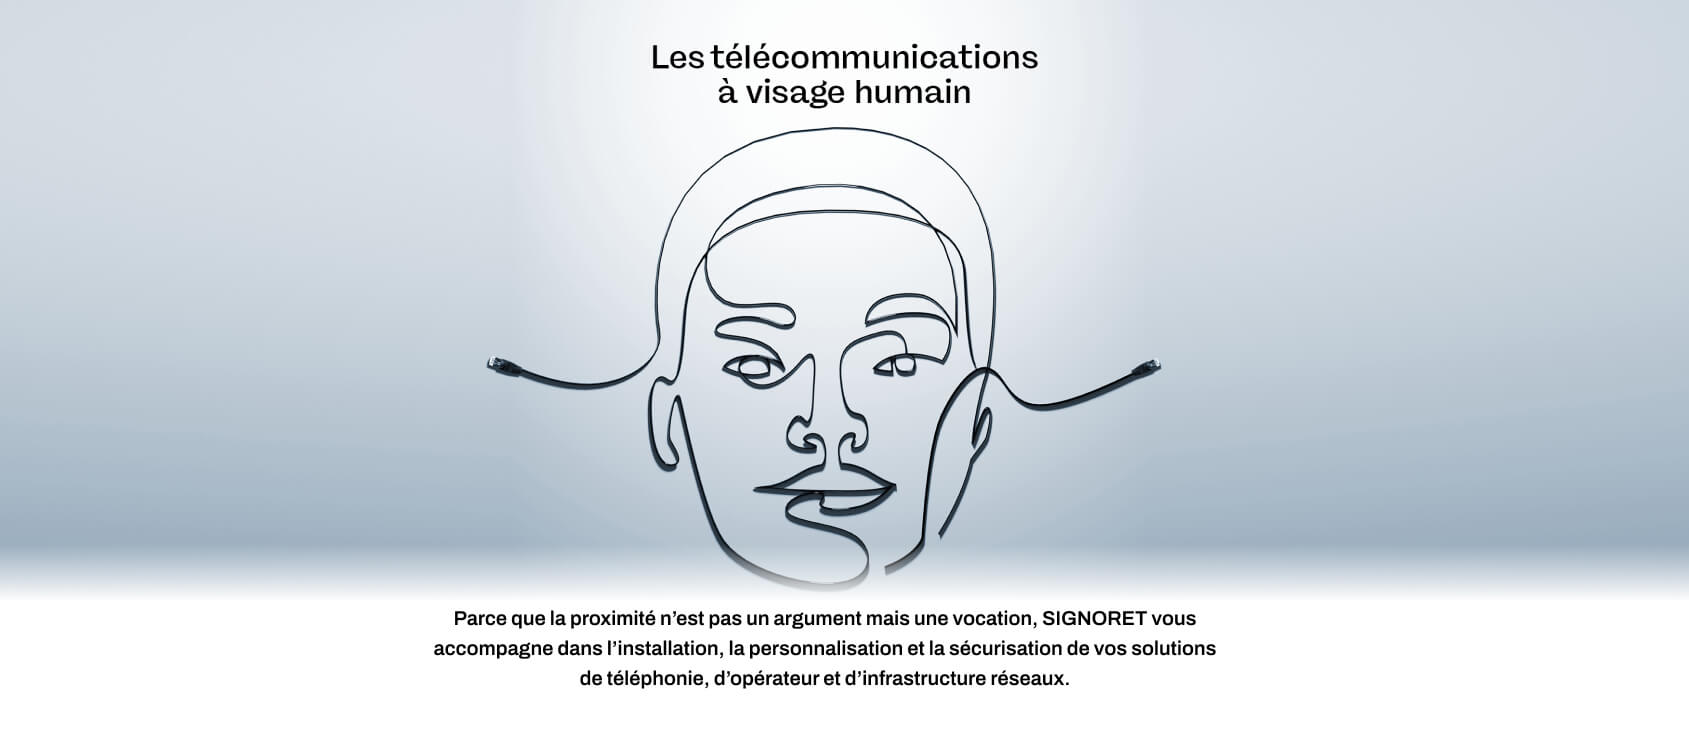 Les télécommunications à visage humain